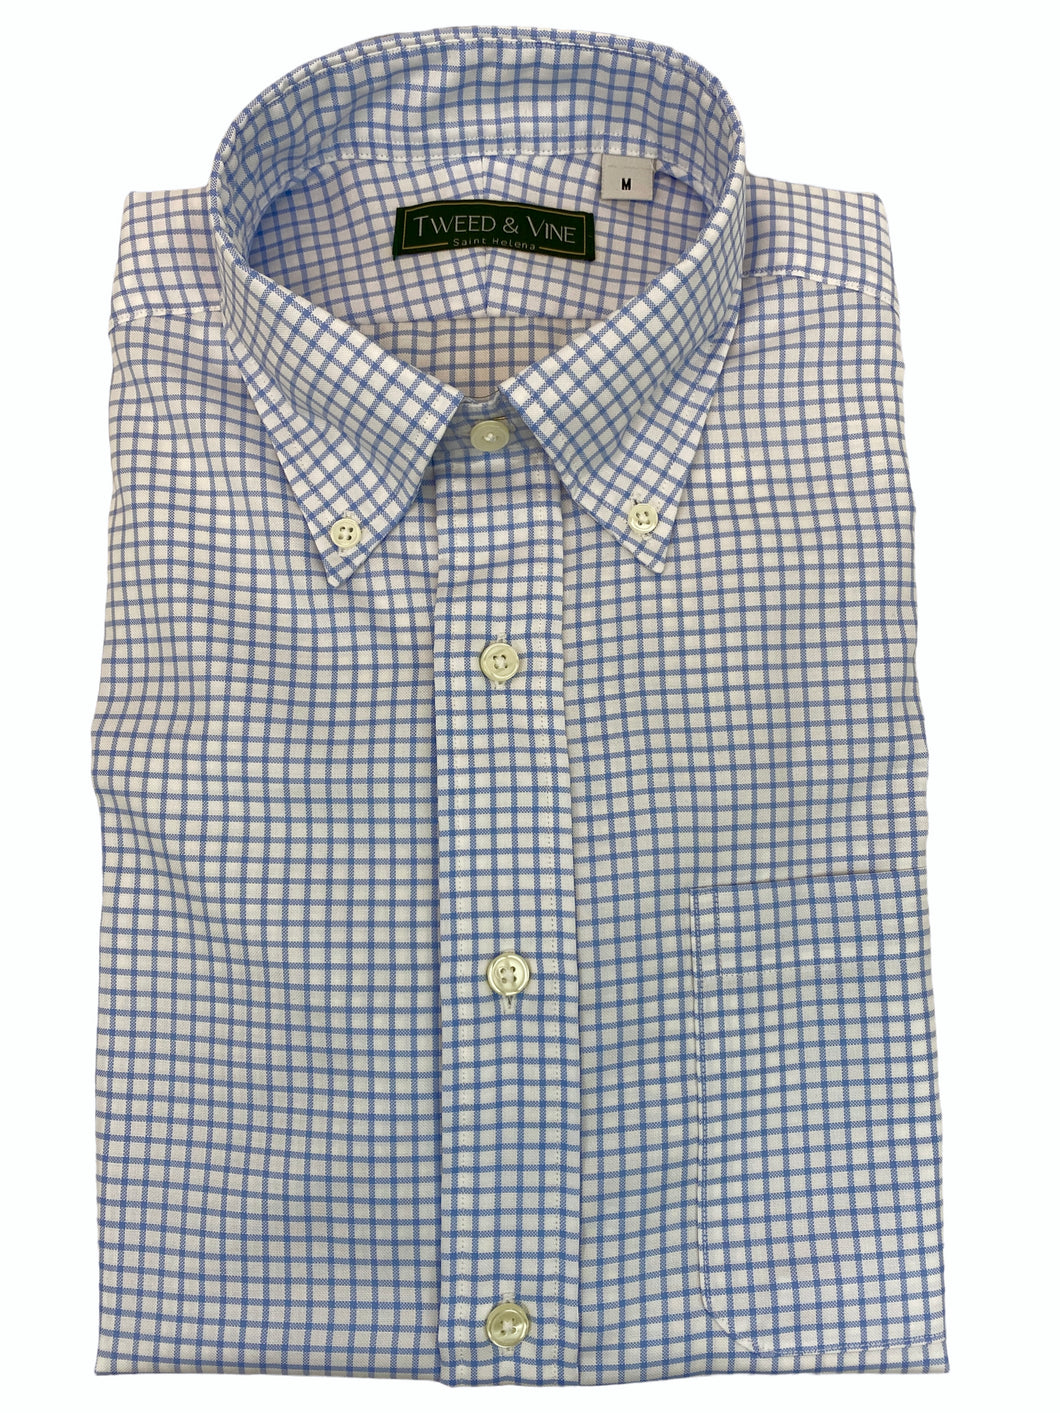 T&V Button Down Shirt - White/Blue Check